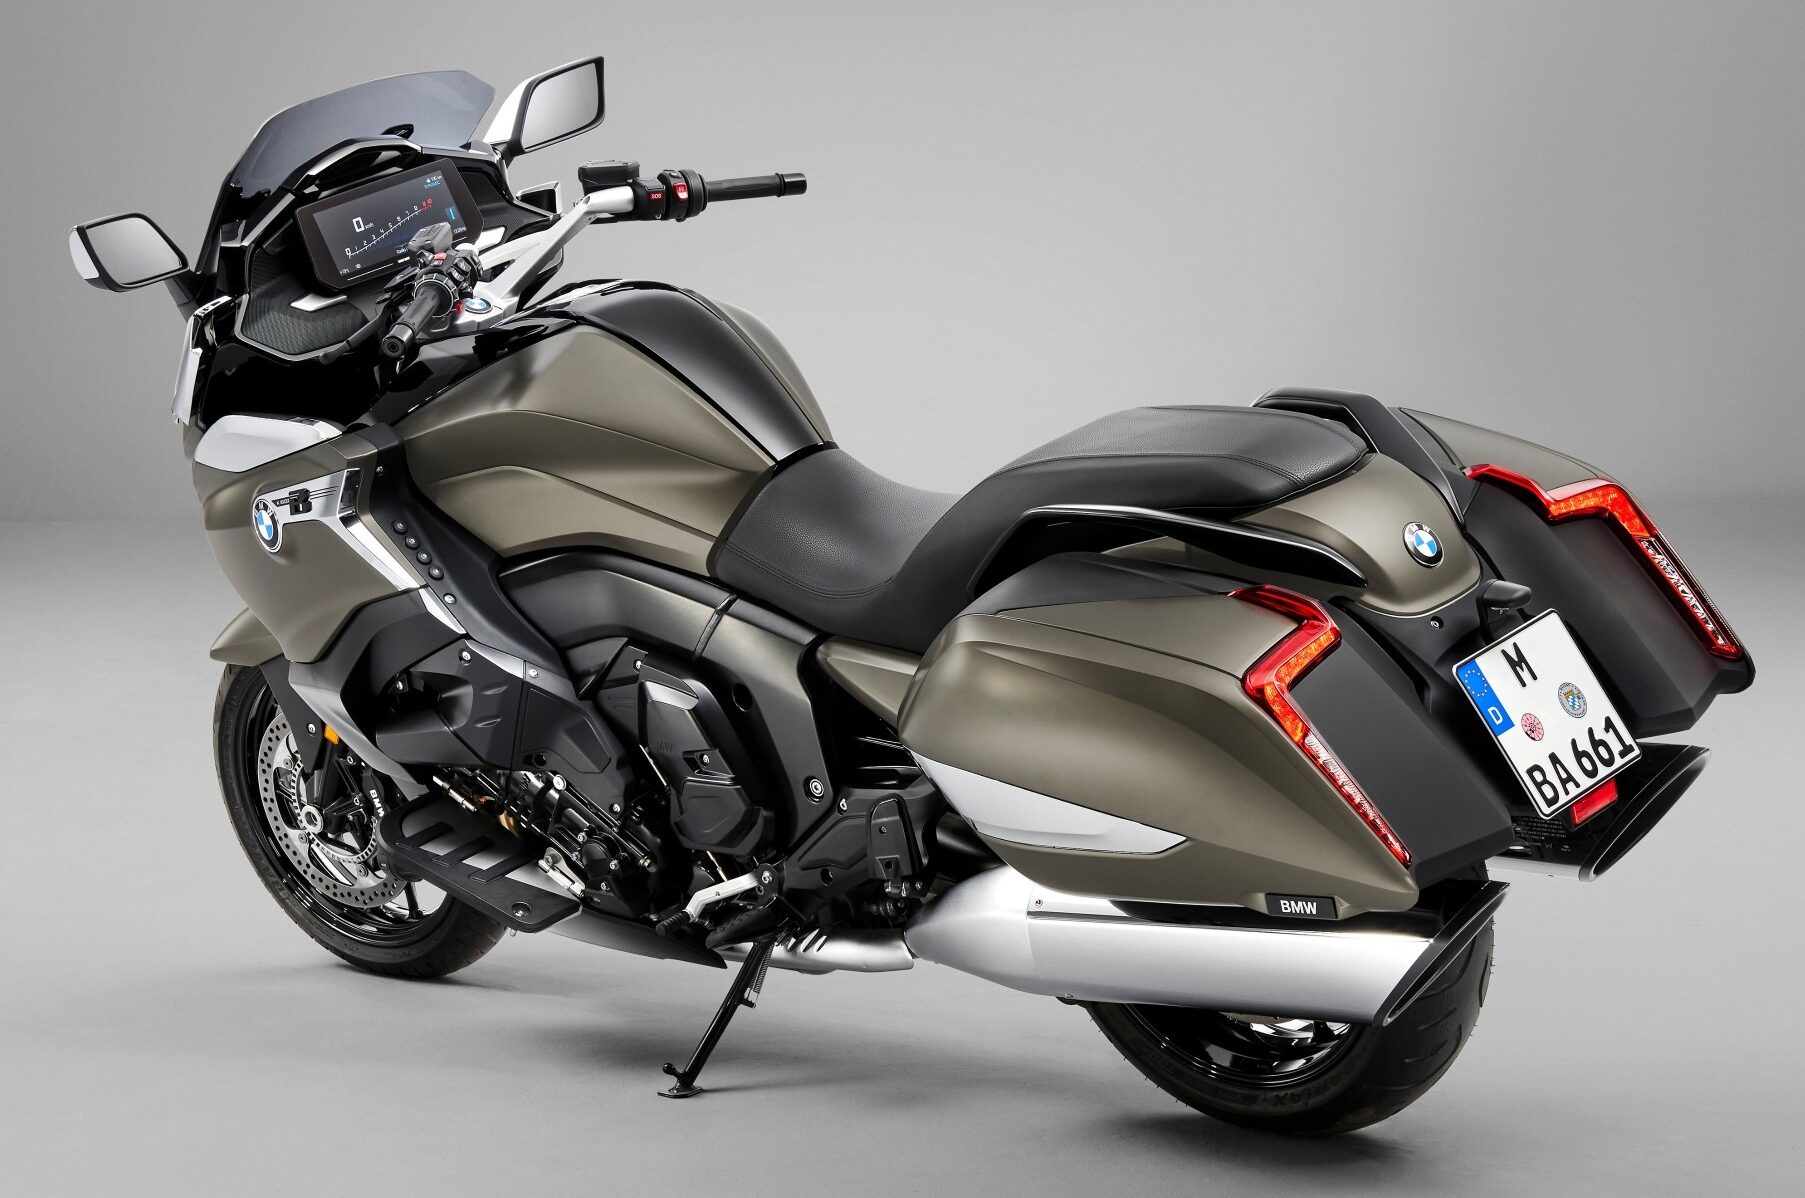 Adesivo per cupolino lato destro moto BMW S1000RR dal 2023